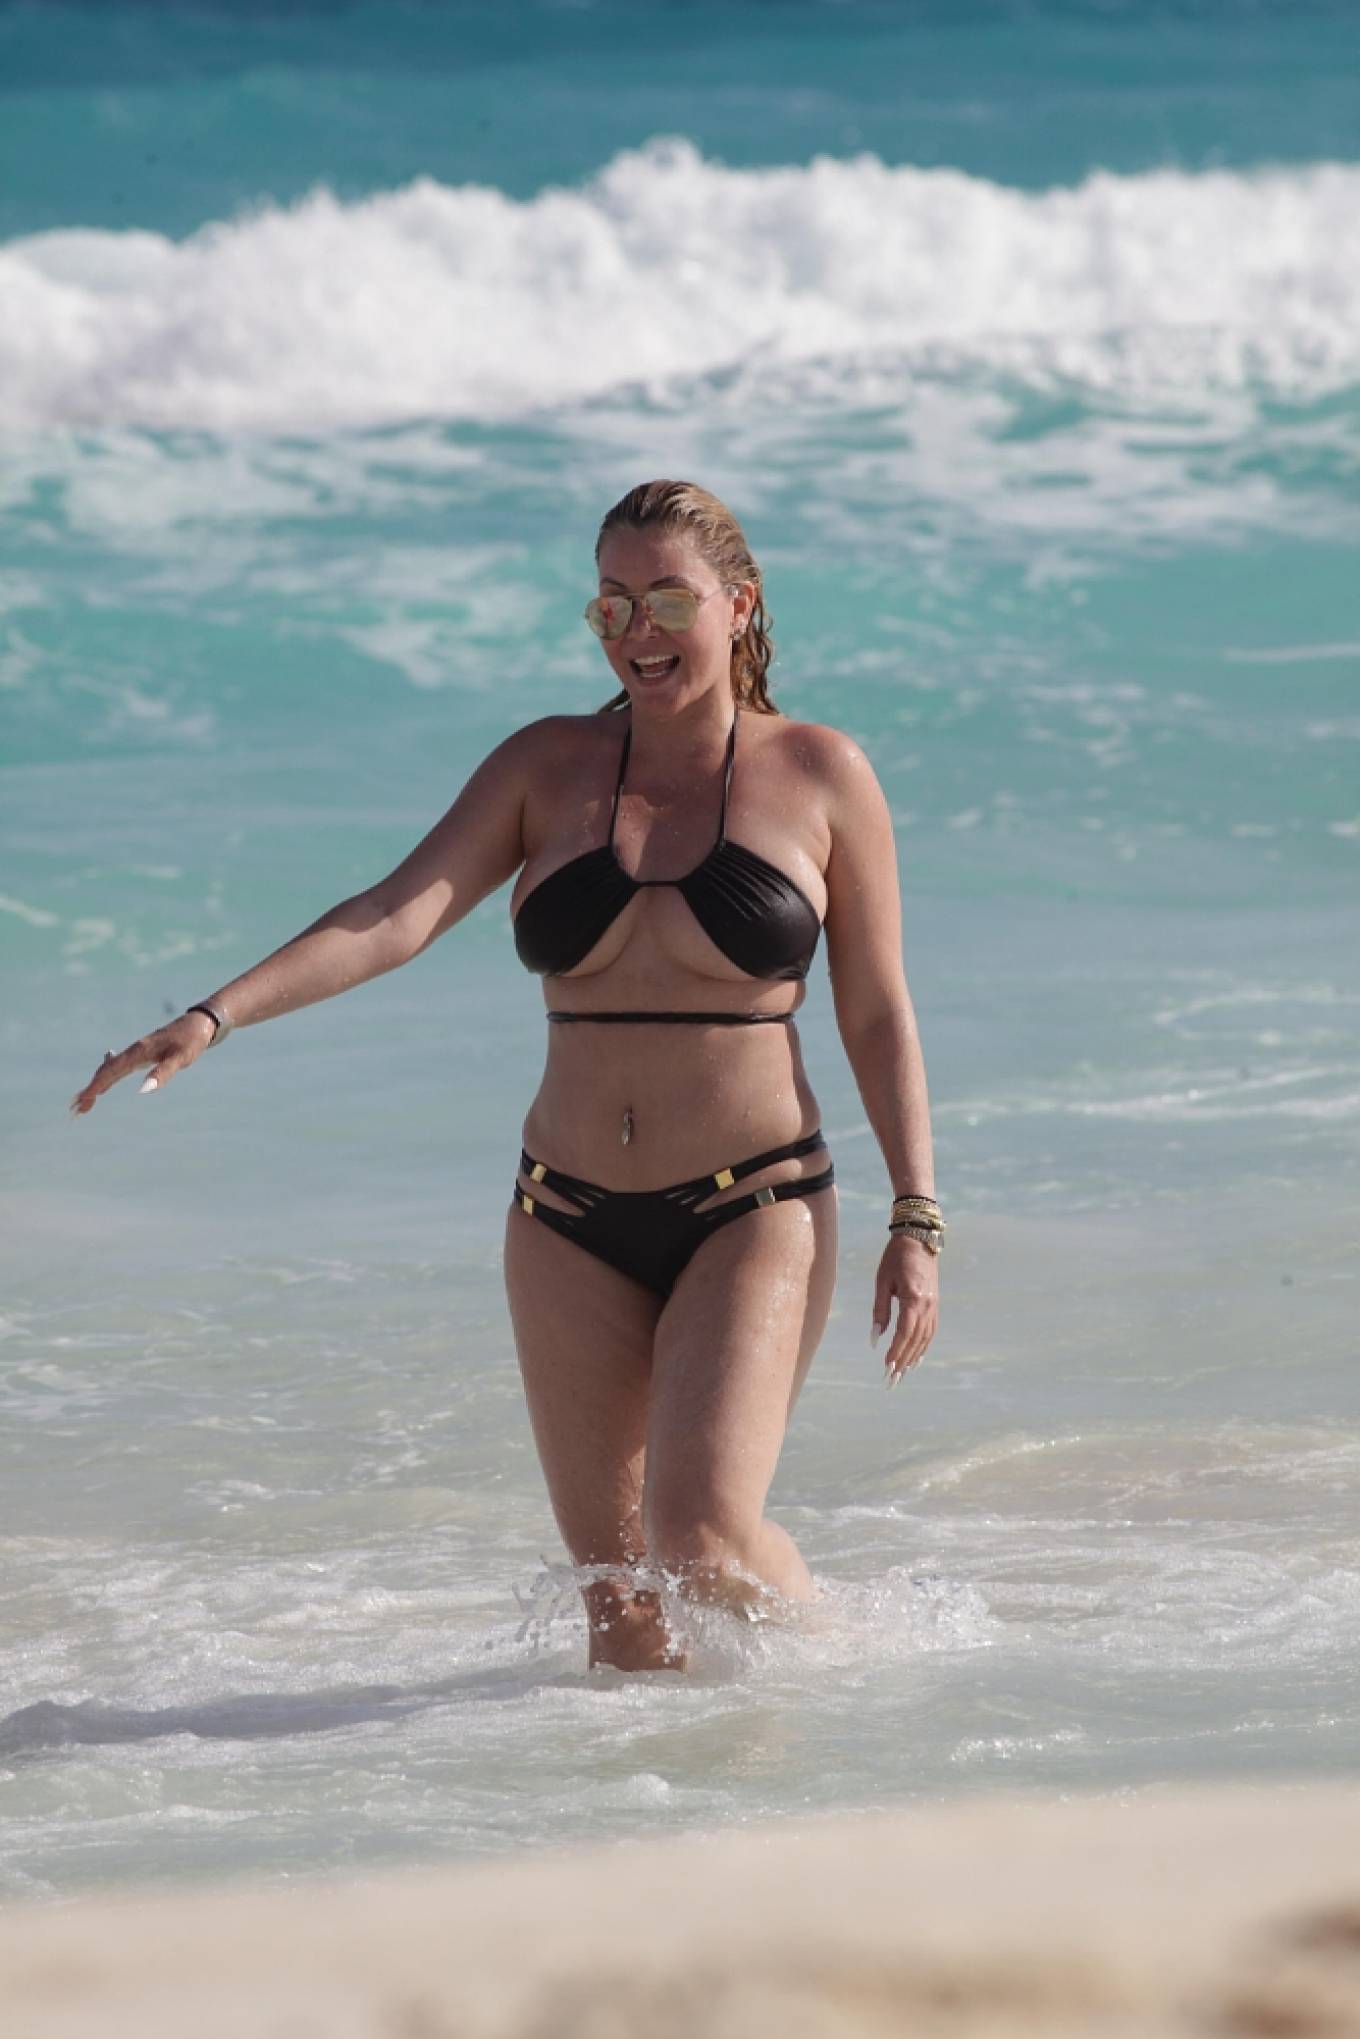 Shanna Moakler 2021 : Shanna Moakler - In a black bikini in Cancun-49. 